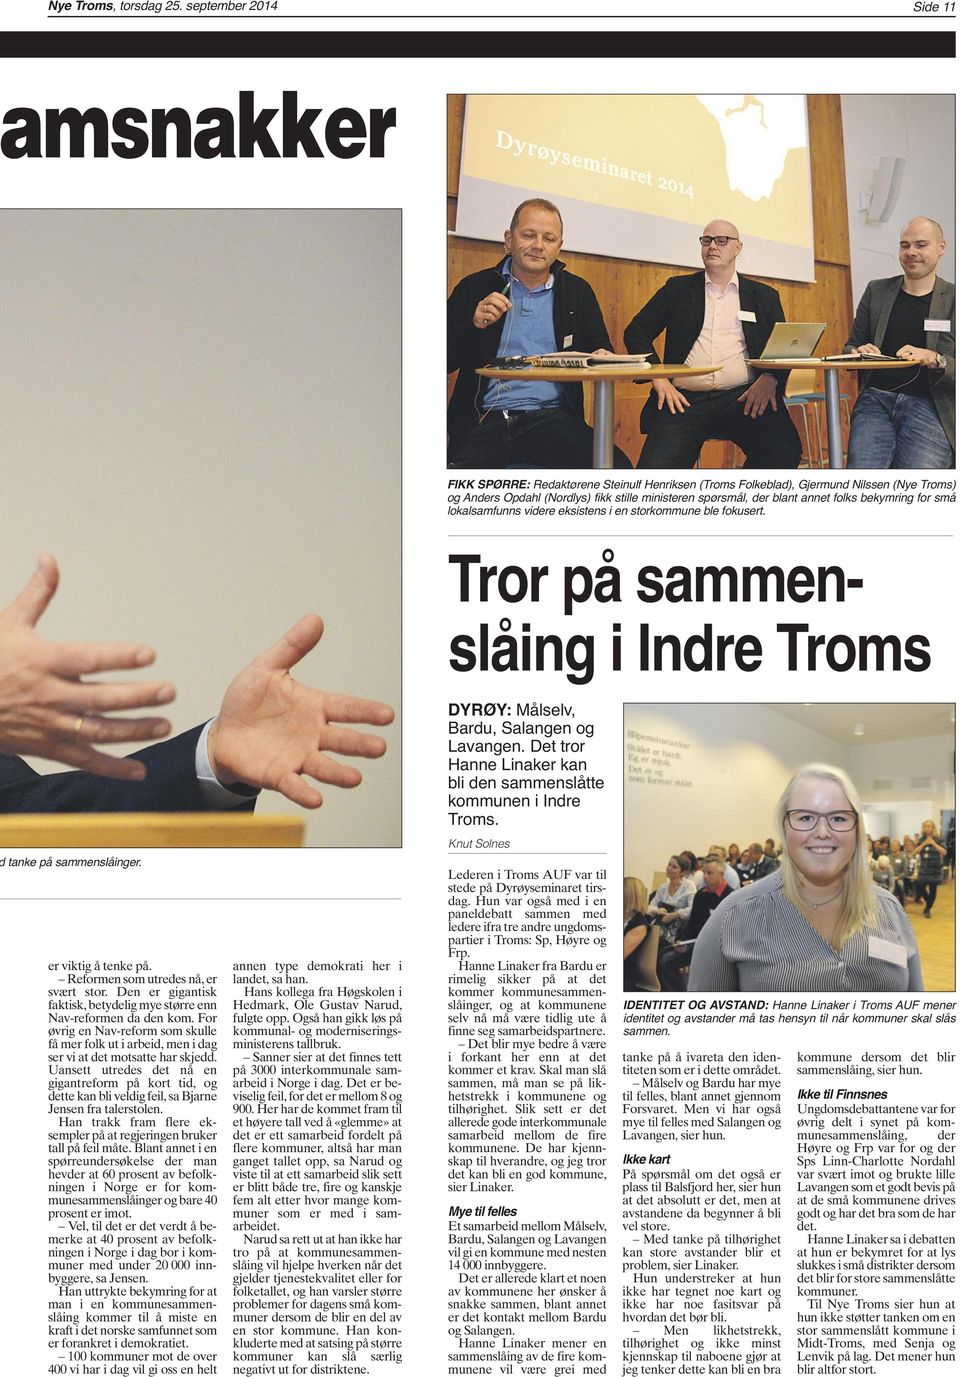 folks bekymring for små lokalsamfunns videre eksistens i en storkommune ble fokusert. Tror på sammenslåing i Indre Troms DYRØY: Målselv, Bardu, Salangen og Lavangen.